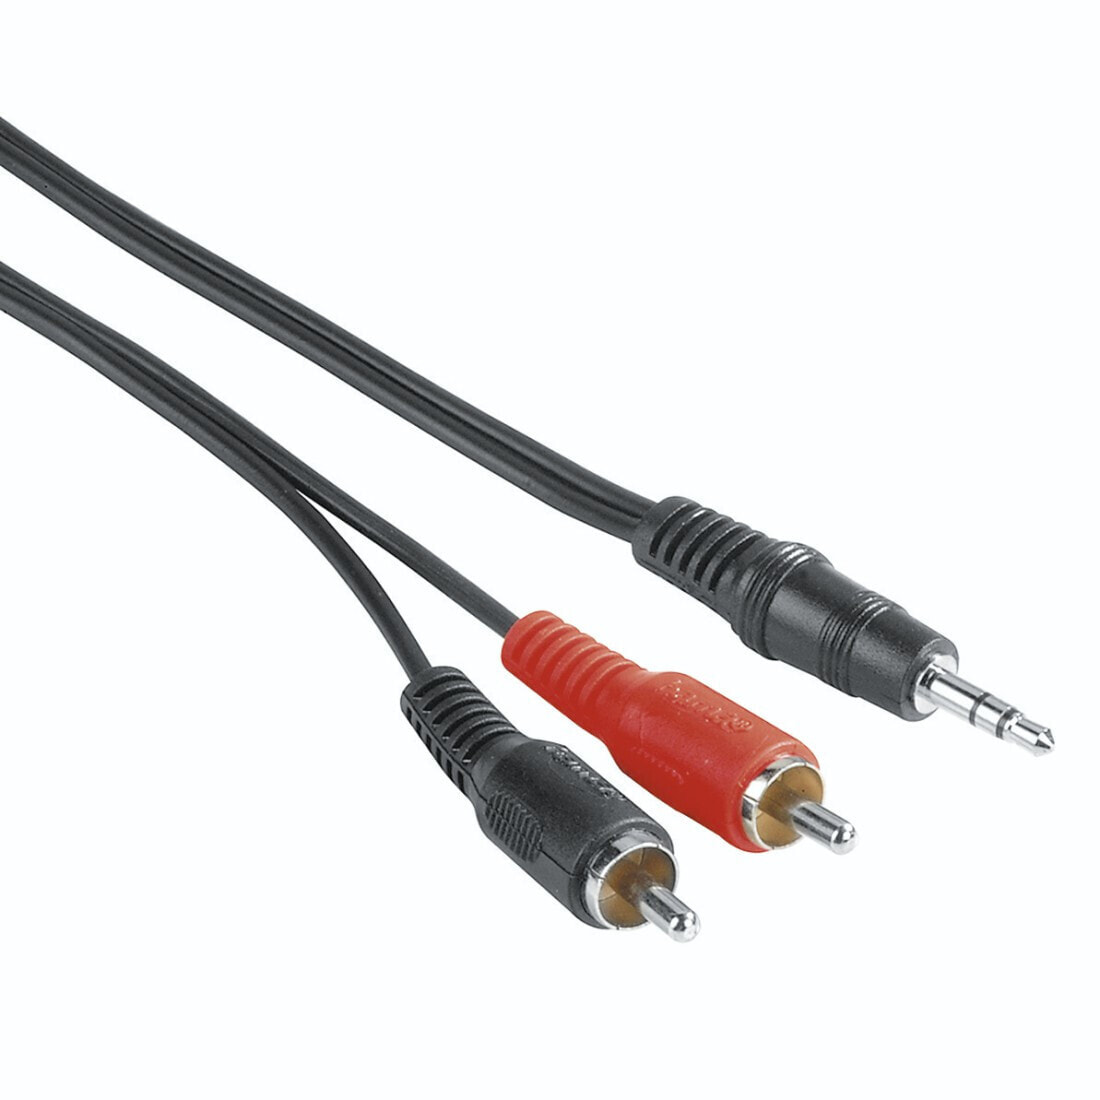 Hama 00205106 аудио кабель 2 m 3,5 мм 2 x RCA Черный, Красный